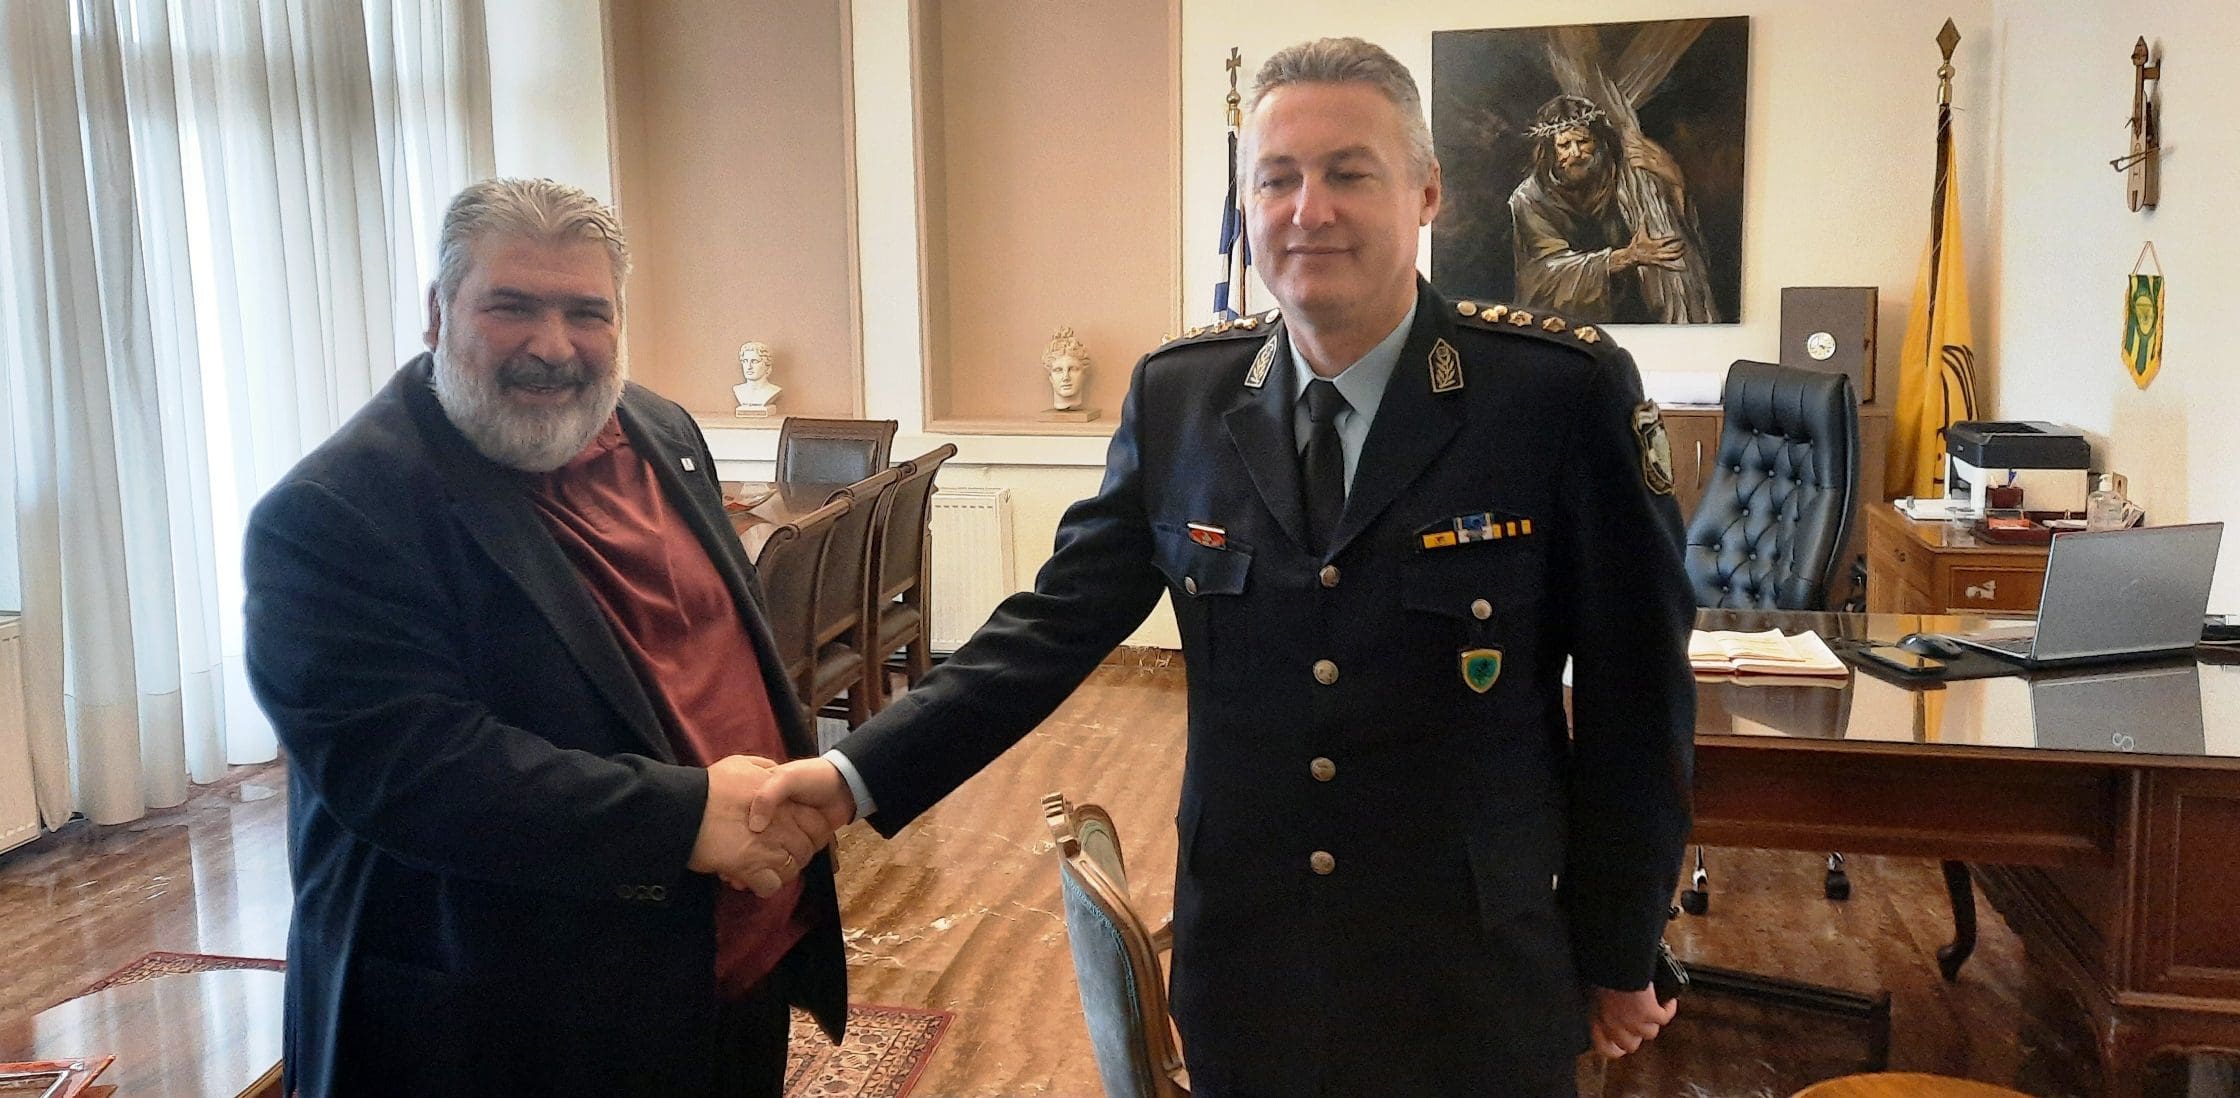 Τον Δήμαρχο Εορδαίας Παναγιώτη Πλακεντά επισκέφθηκε ο νέος Διευθυντής της Διεύθυνσης Αστυνομίας Κοζάνης, Ηλίας Τσιότσιας.